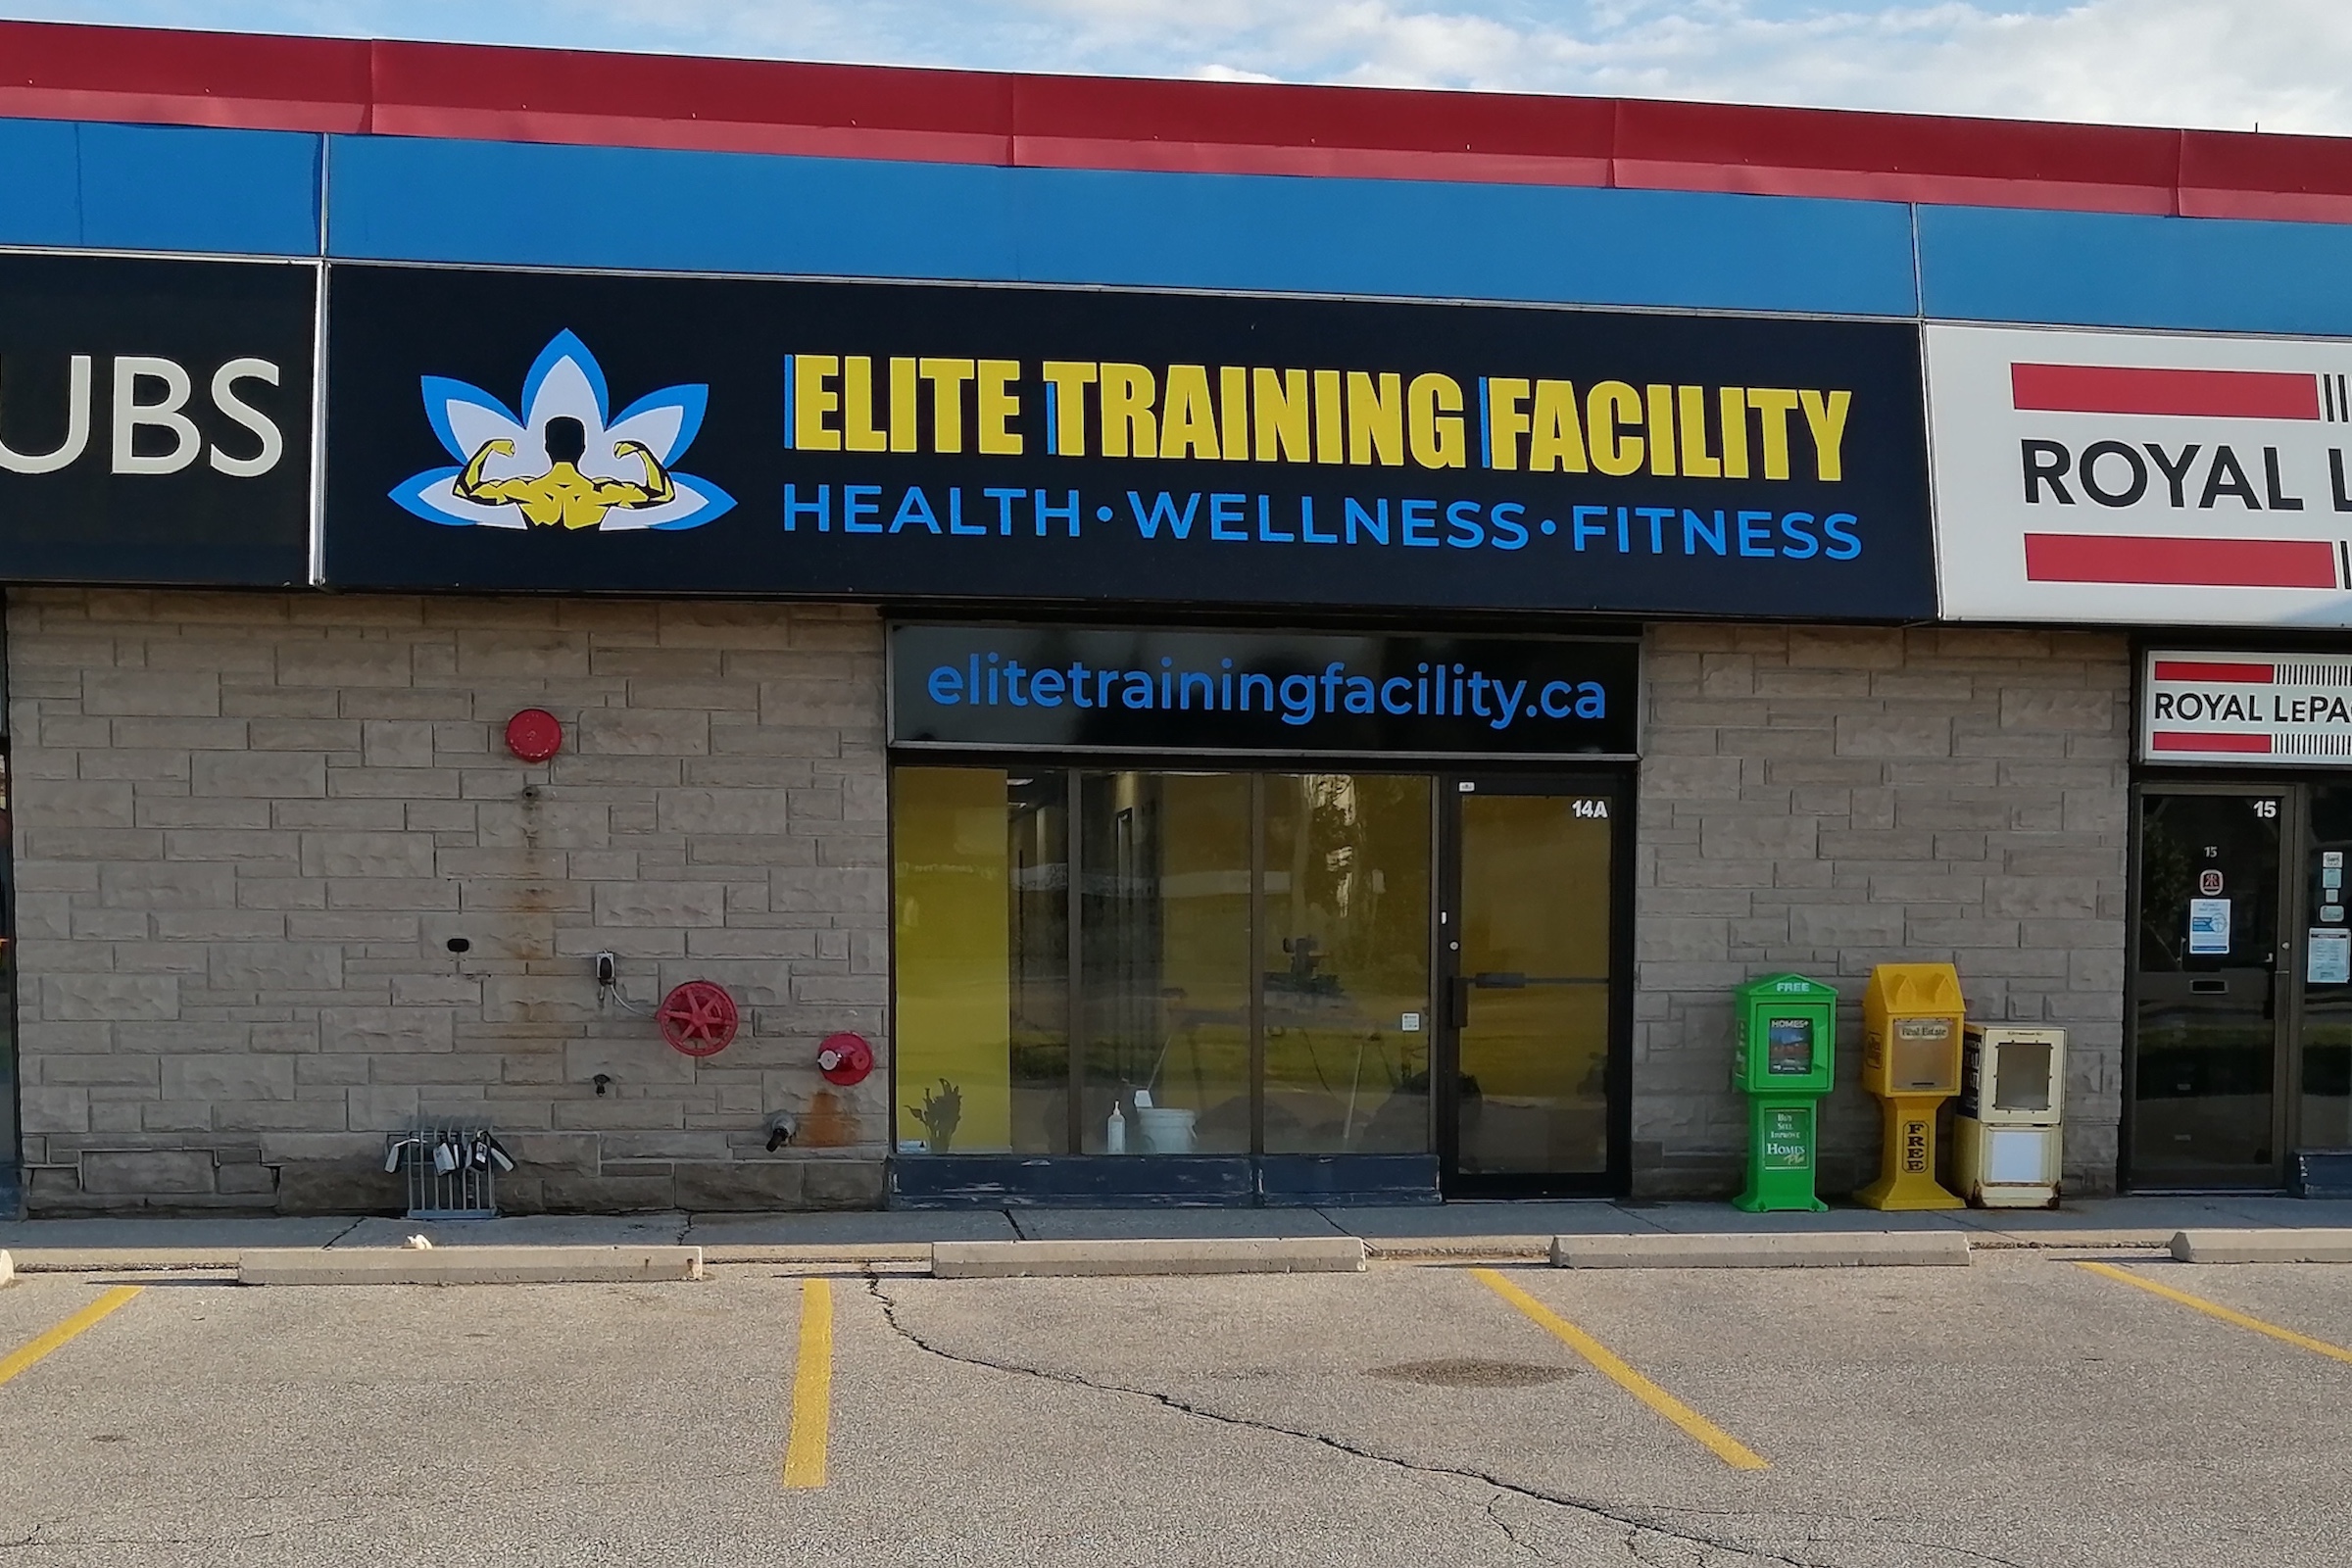 Our Facility - Elite Training Facility